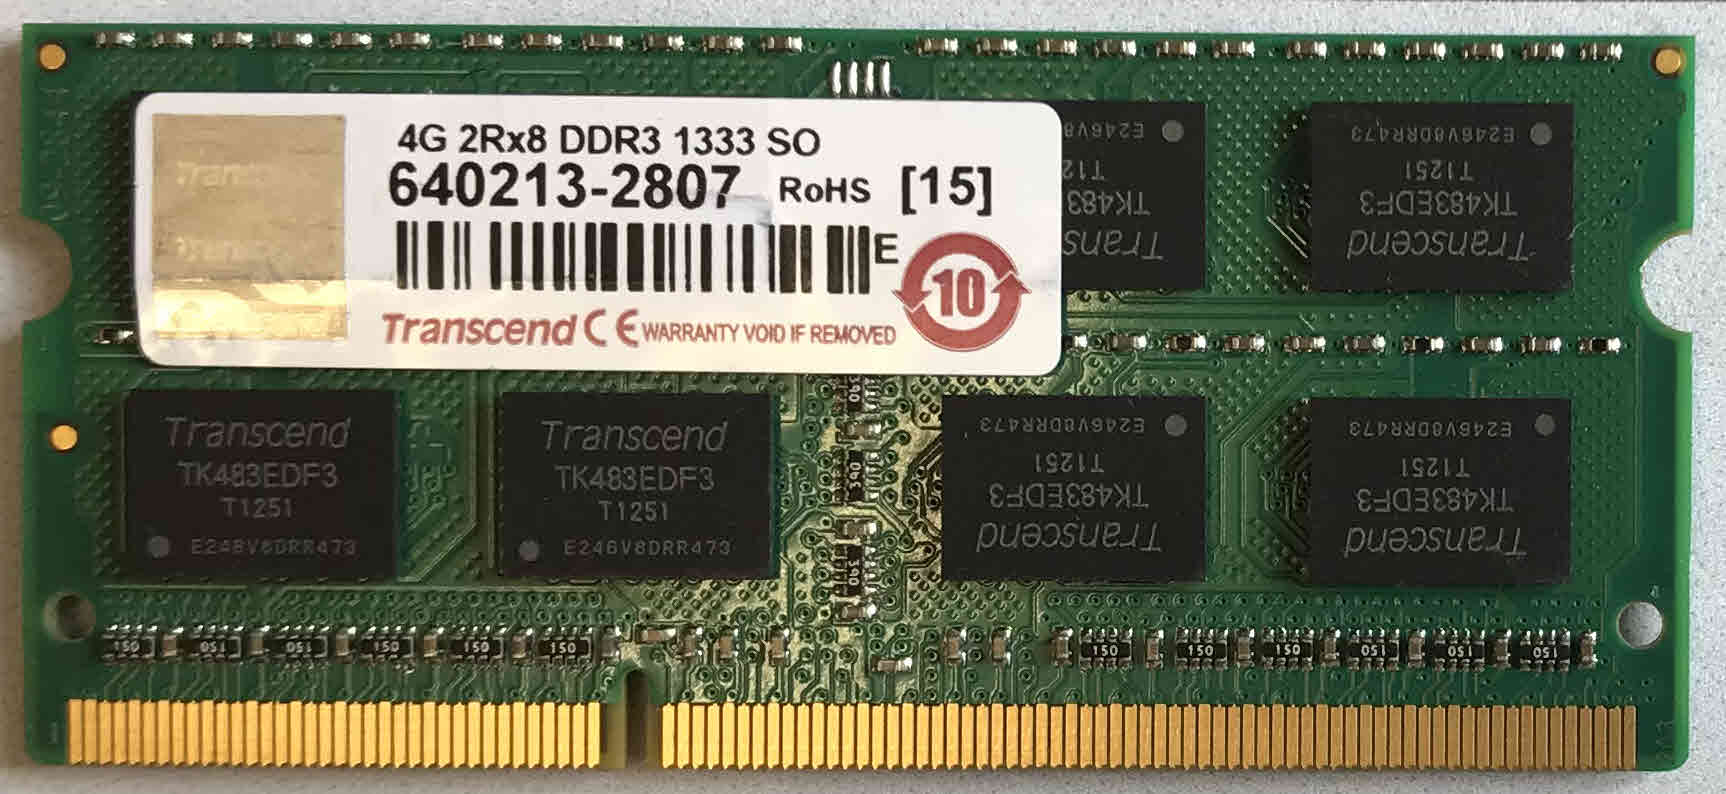 4G 2Rx8 DDR3 1333 S0 Transcend